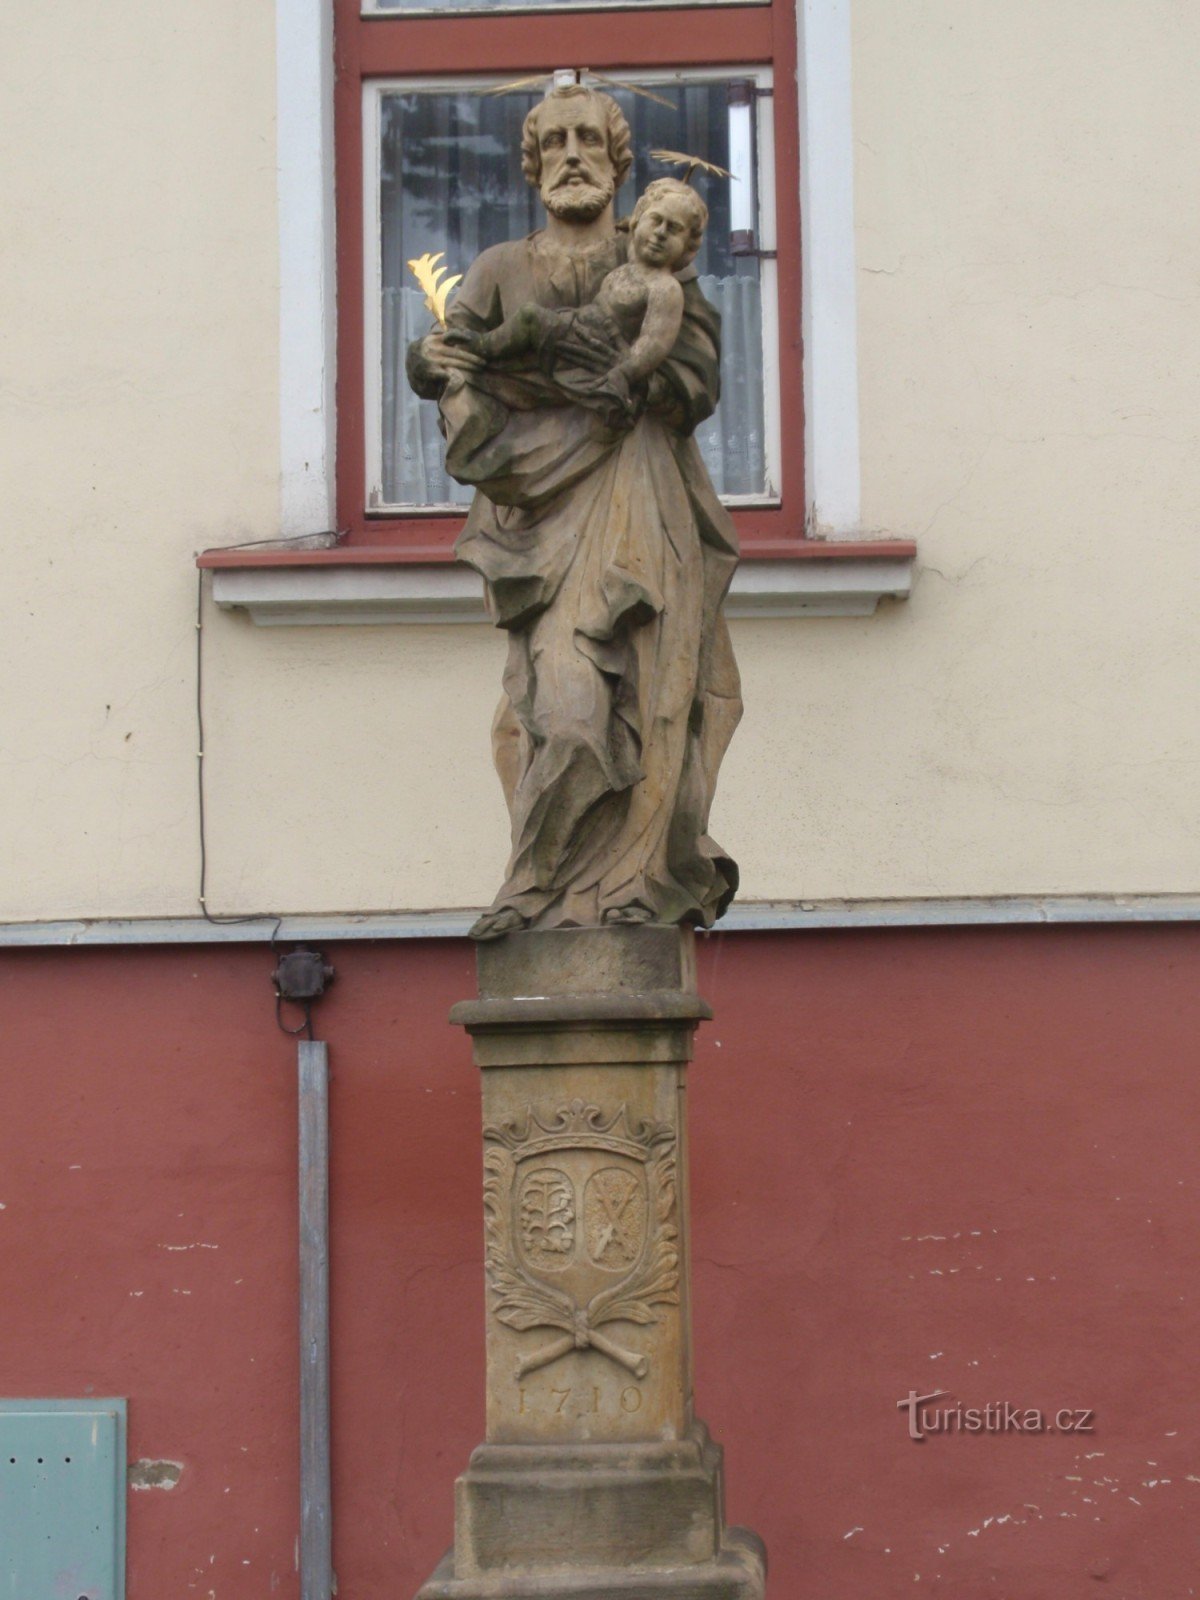 Baroque sculptures in Jevíček